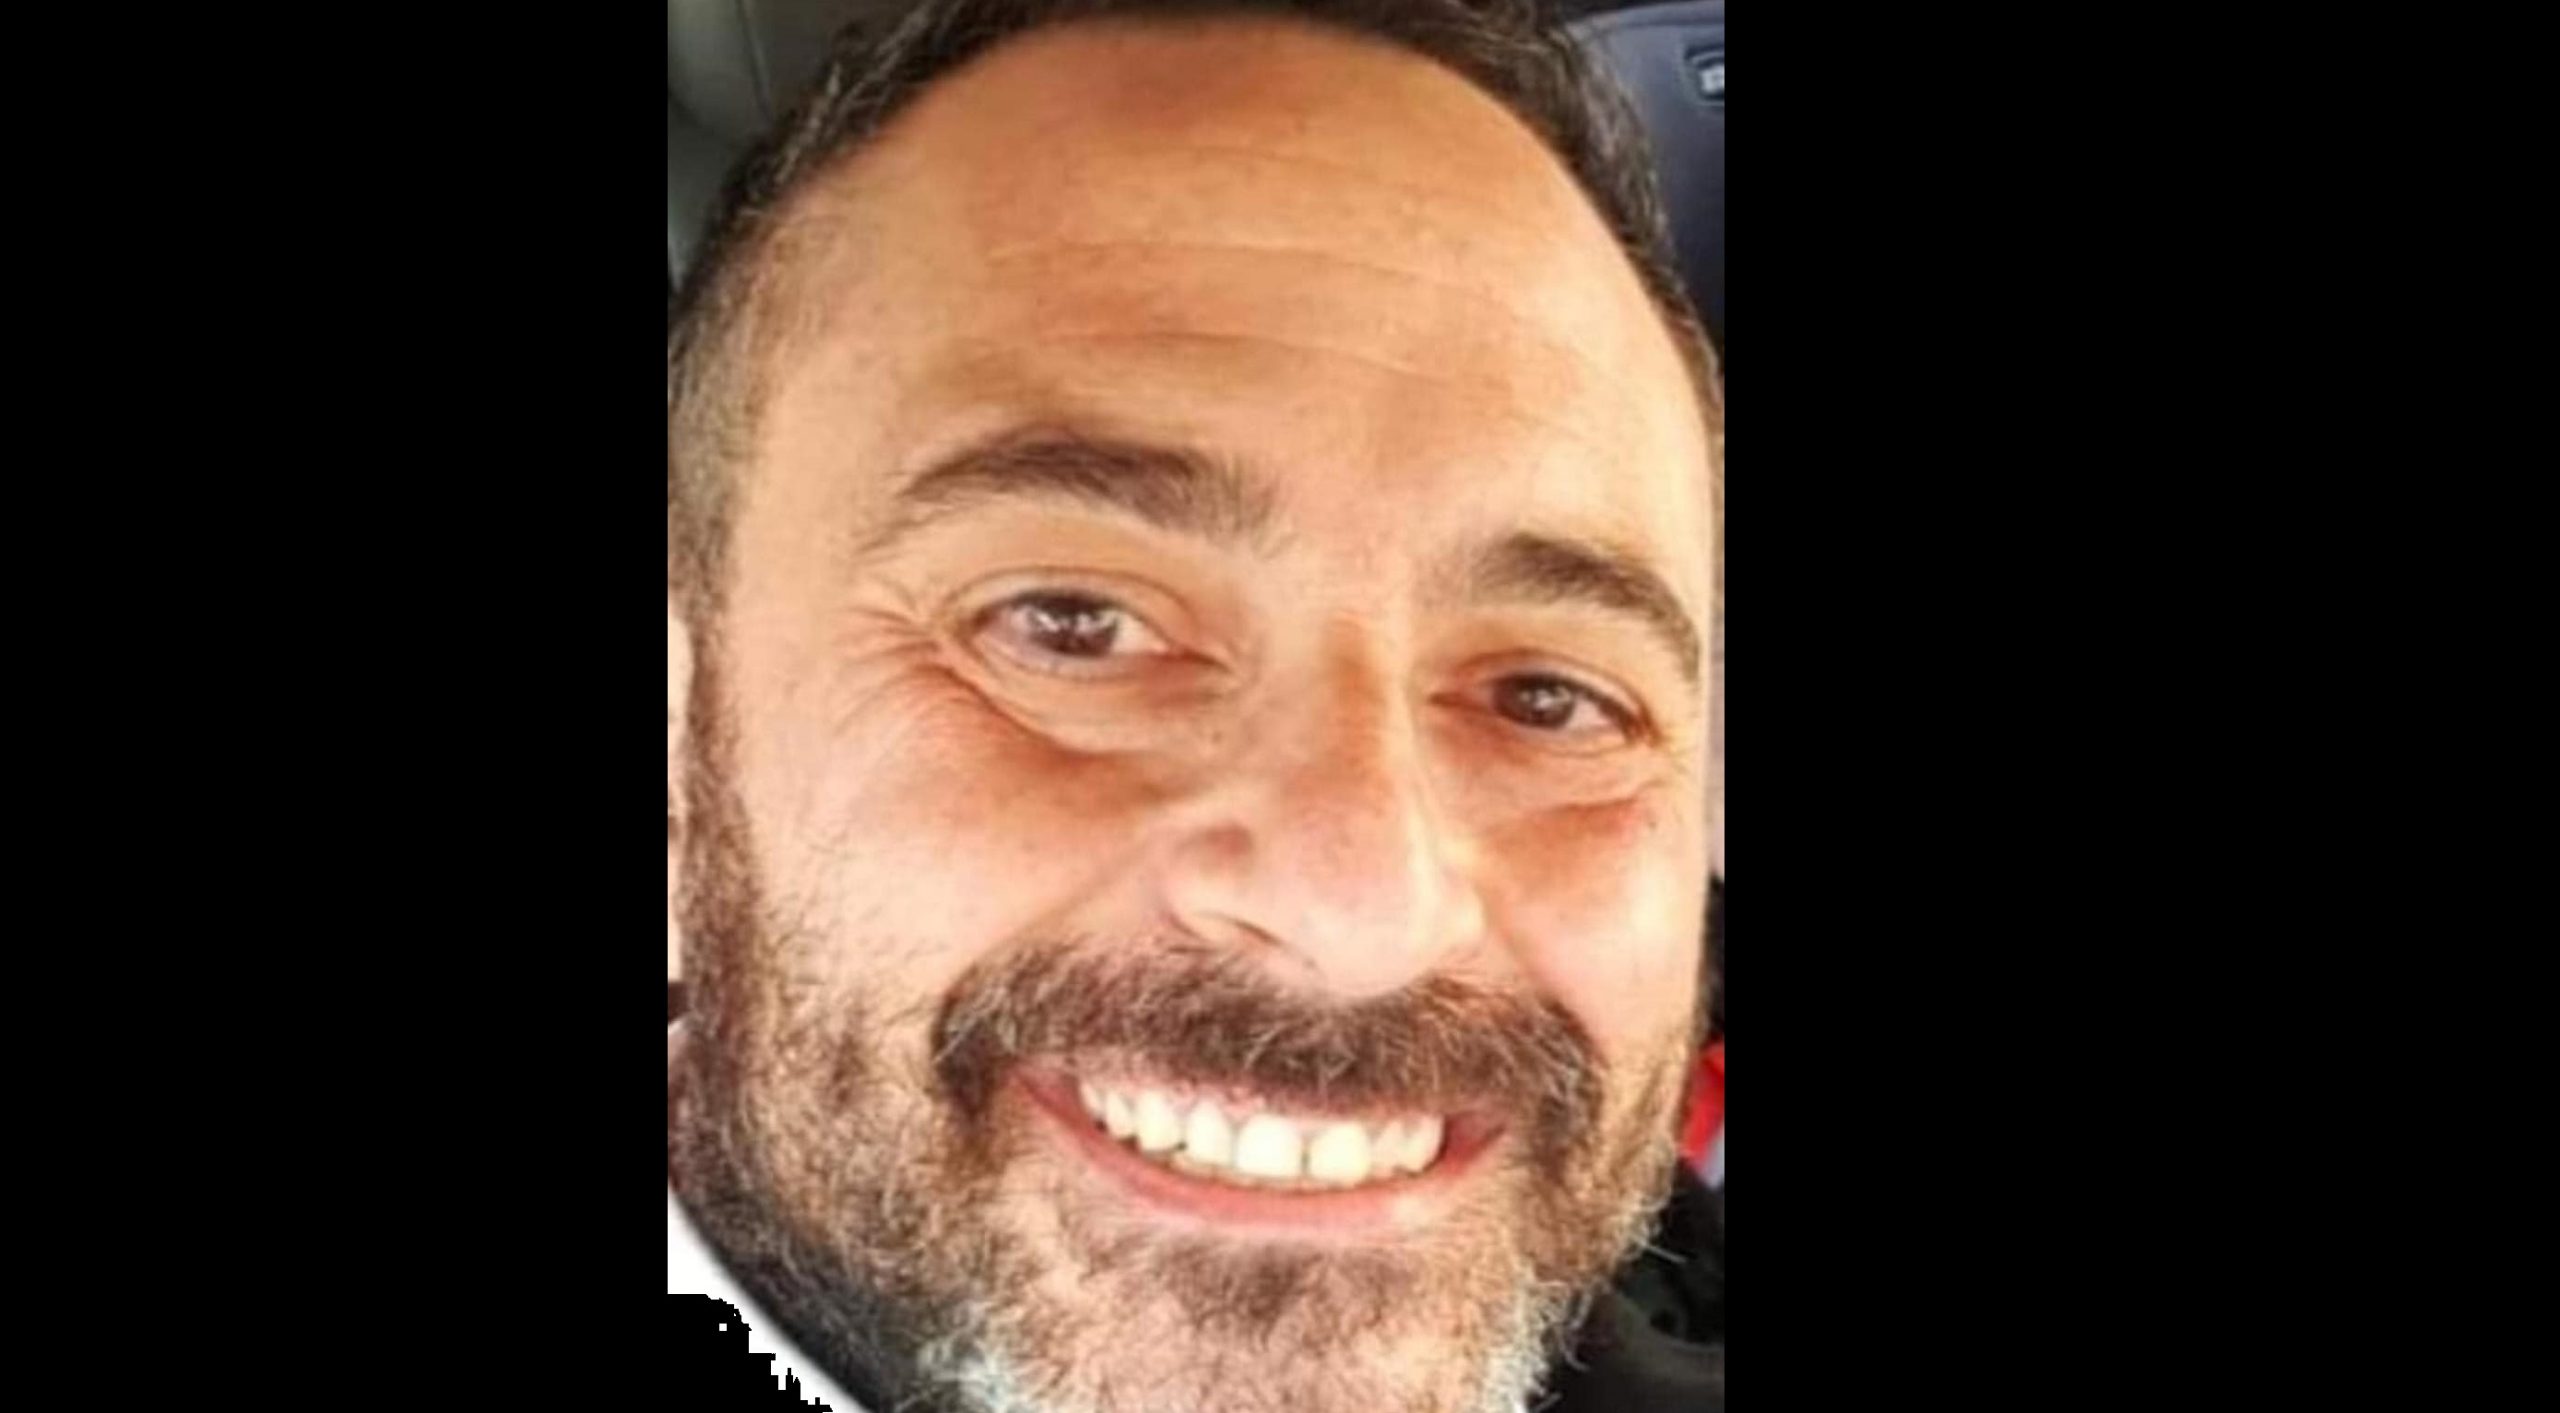 Scomparso Francesco Emanuele a Lentini, l’appello della moglie sui social: “Aiutatemi”